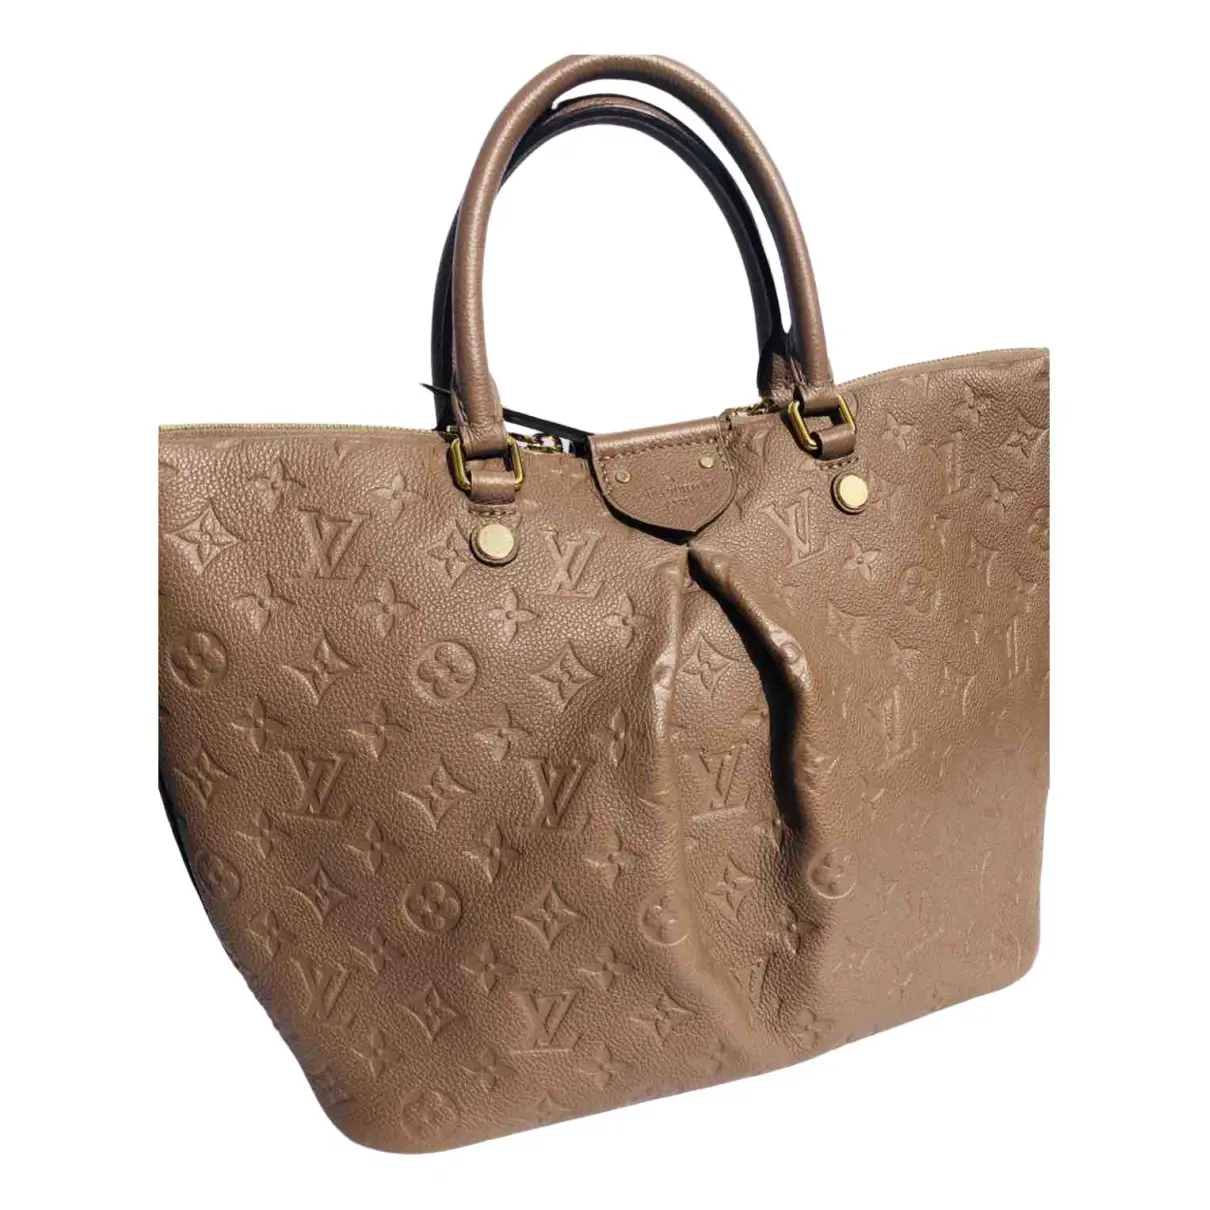 Mazarine leather handbag Louis Vuitton